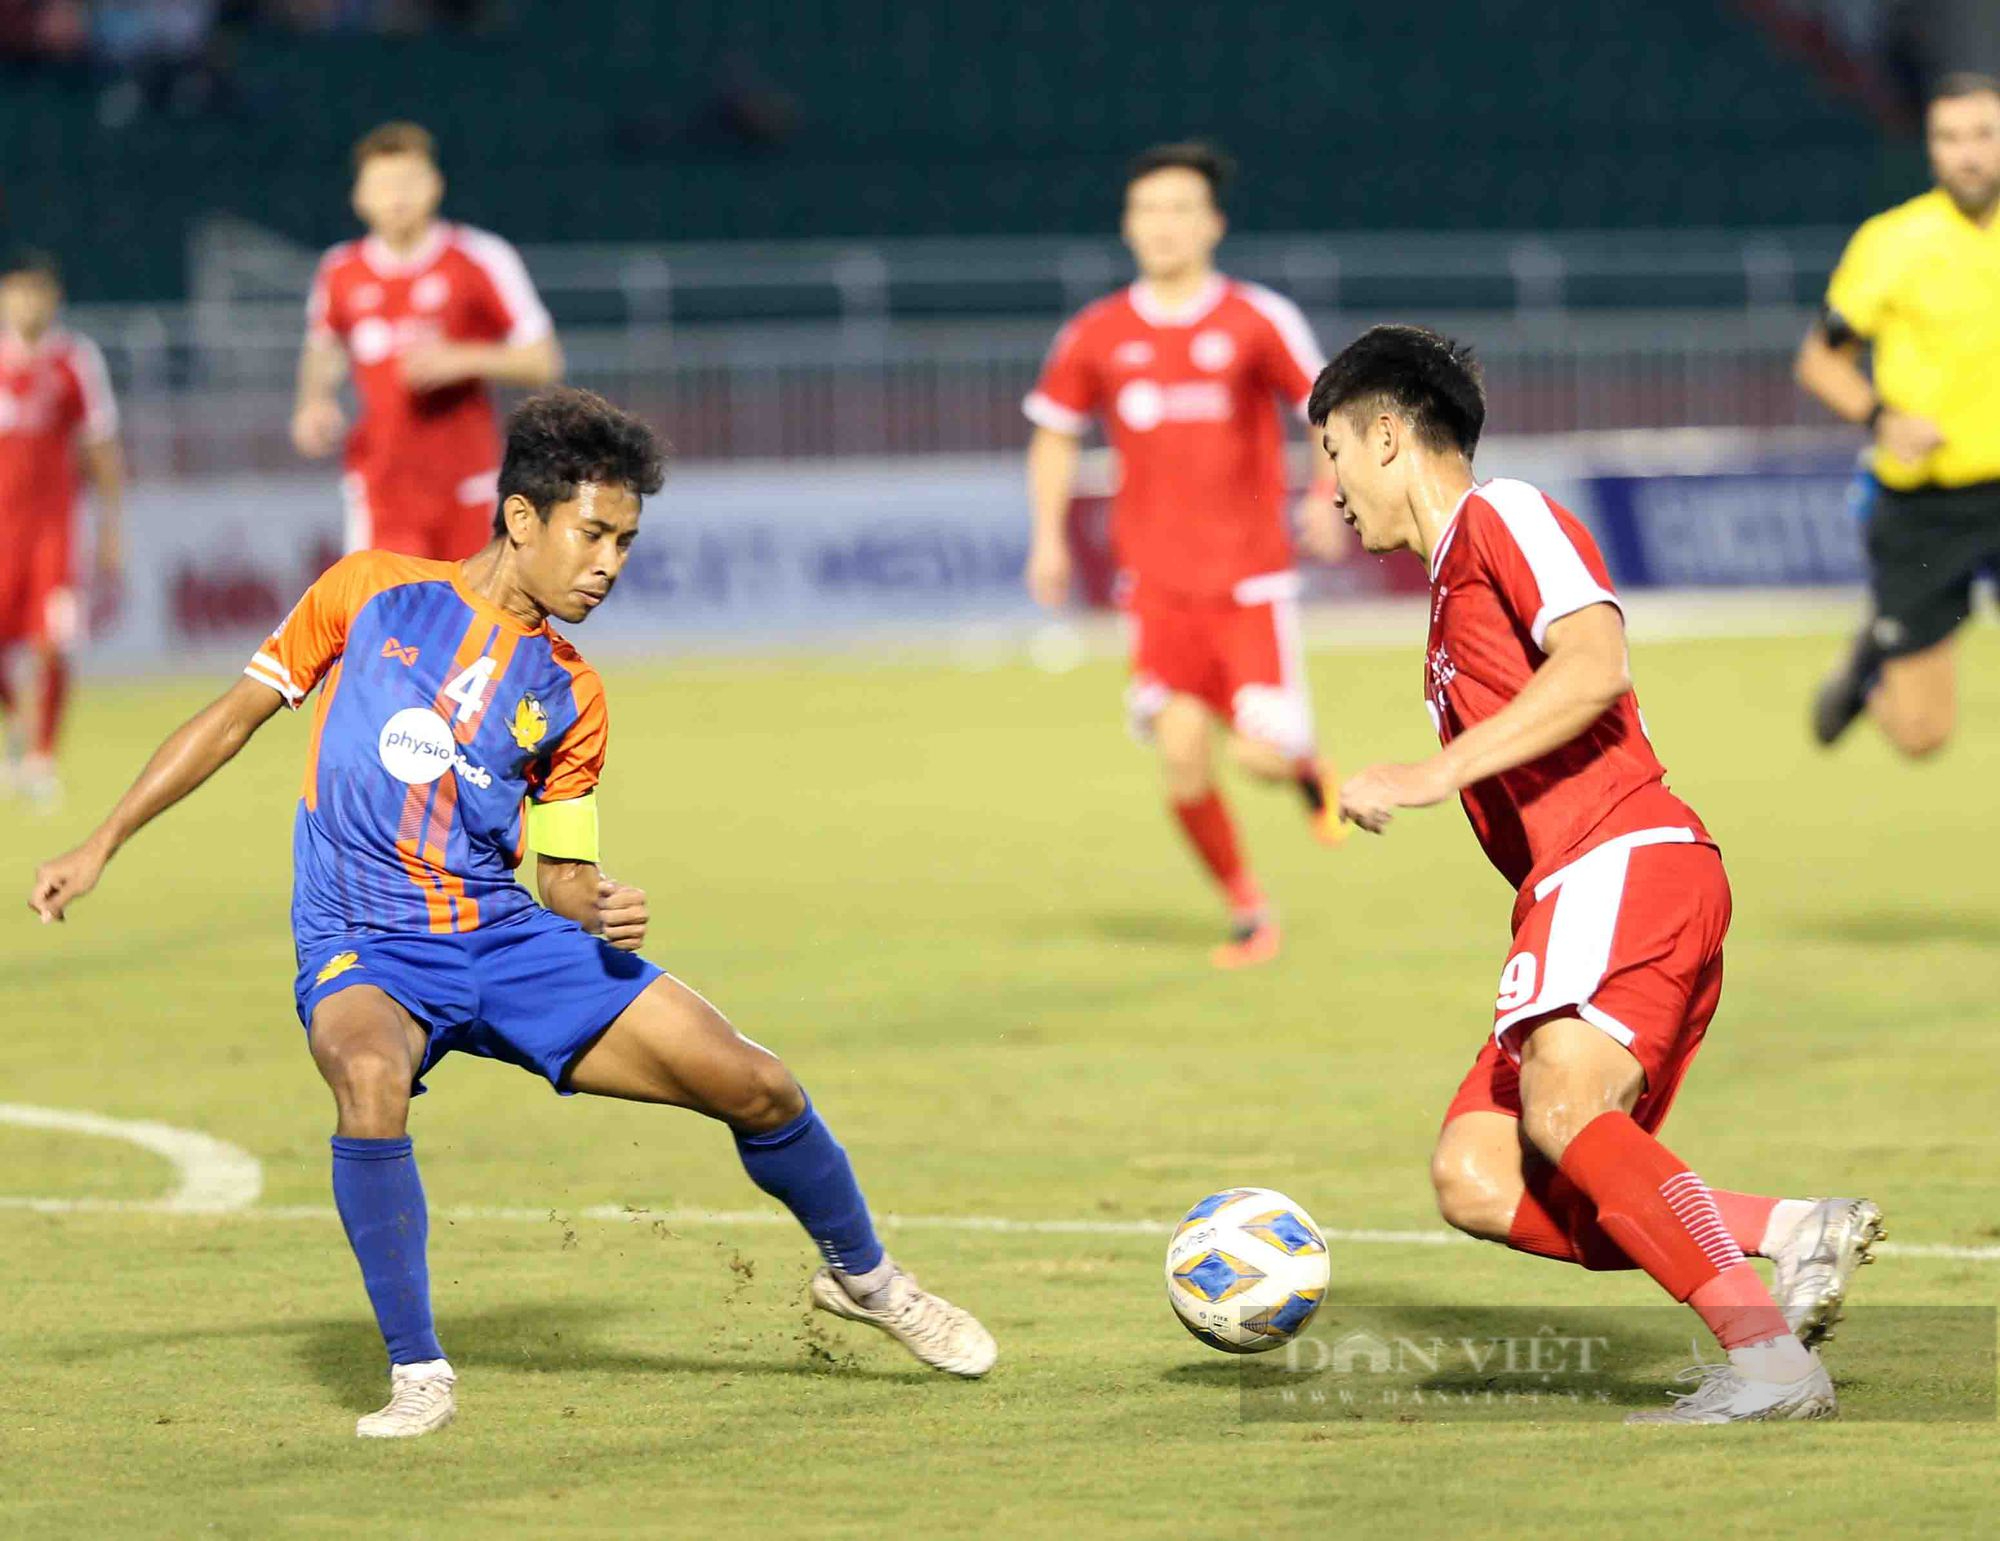 Nhâm Mạnh Dũng kiến tạo, Viettel đánh bại bóng Singapore vượt qua vòng bảng AFC Cup - Ảnh 8.